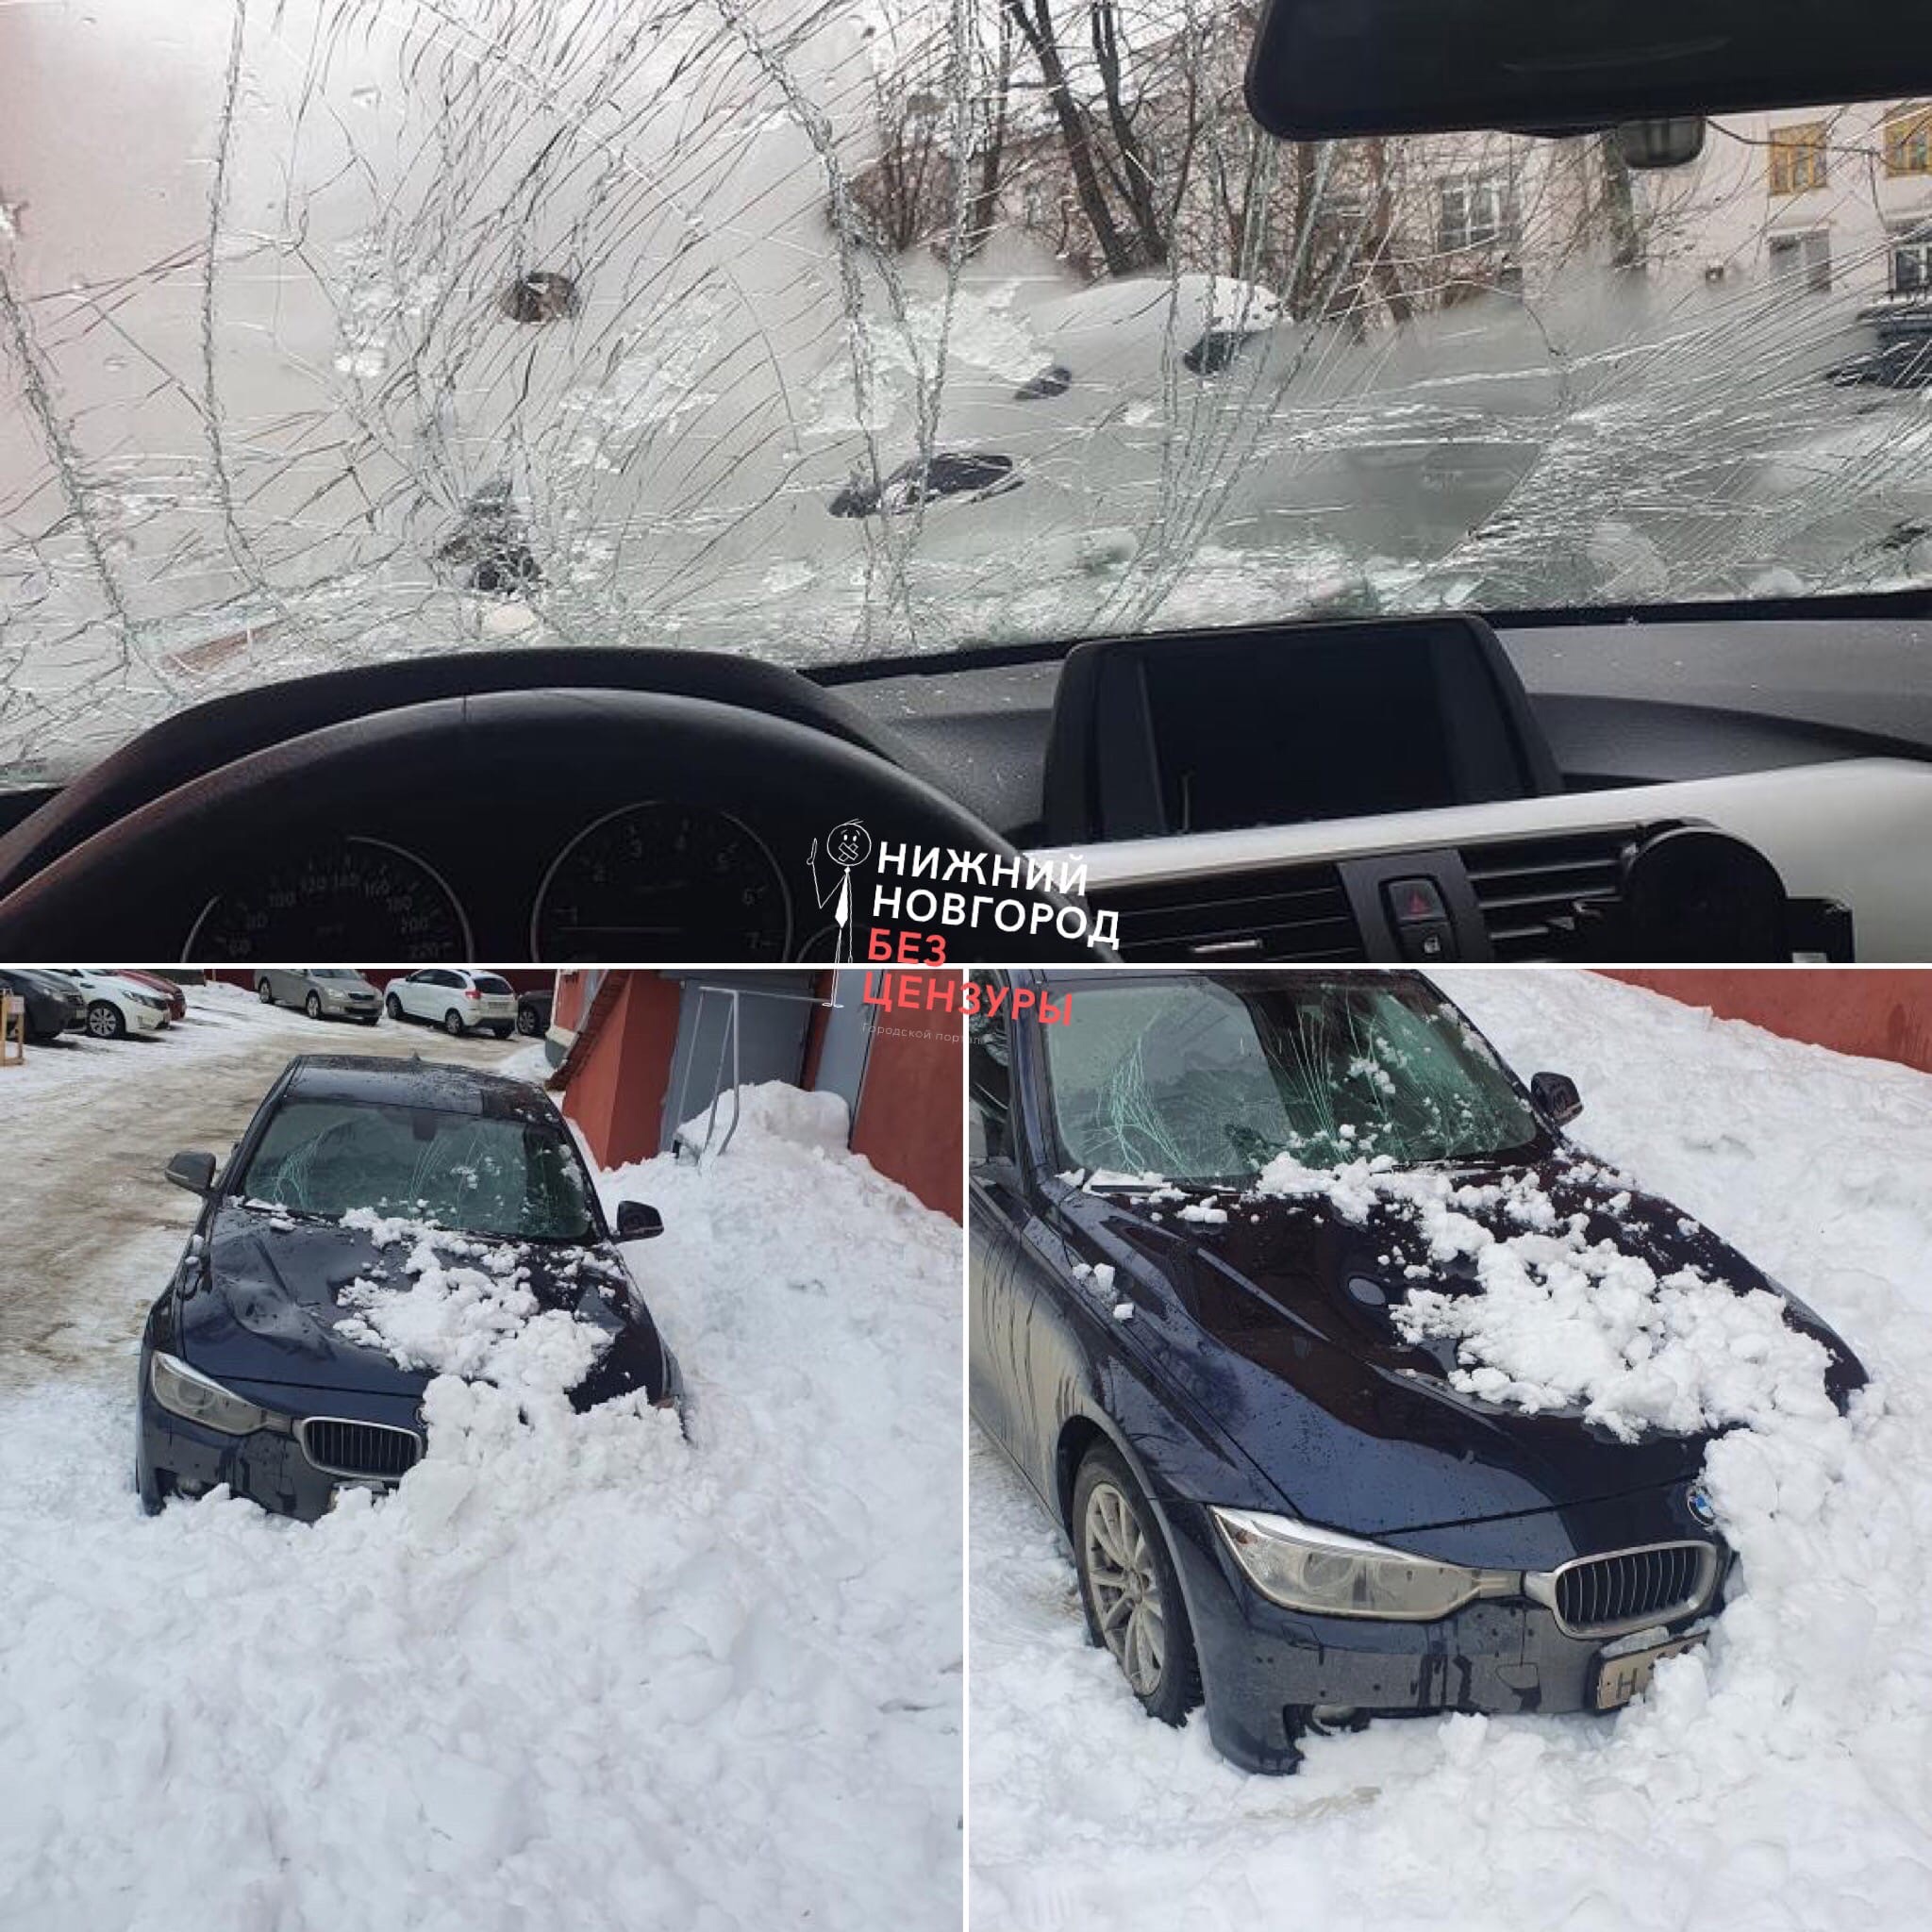 Въехал в сугроб. Сход снега с крыши на автомобиль. Разбитая машина в сугробе. Вмятина на крыше автомобиля от снега. Снег скатился на БМВ.